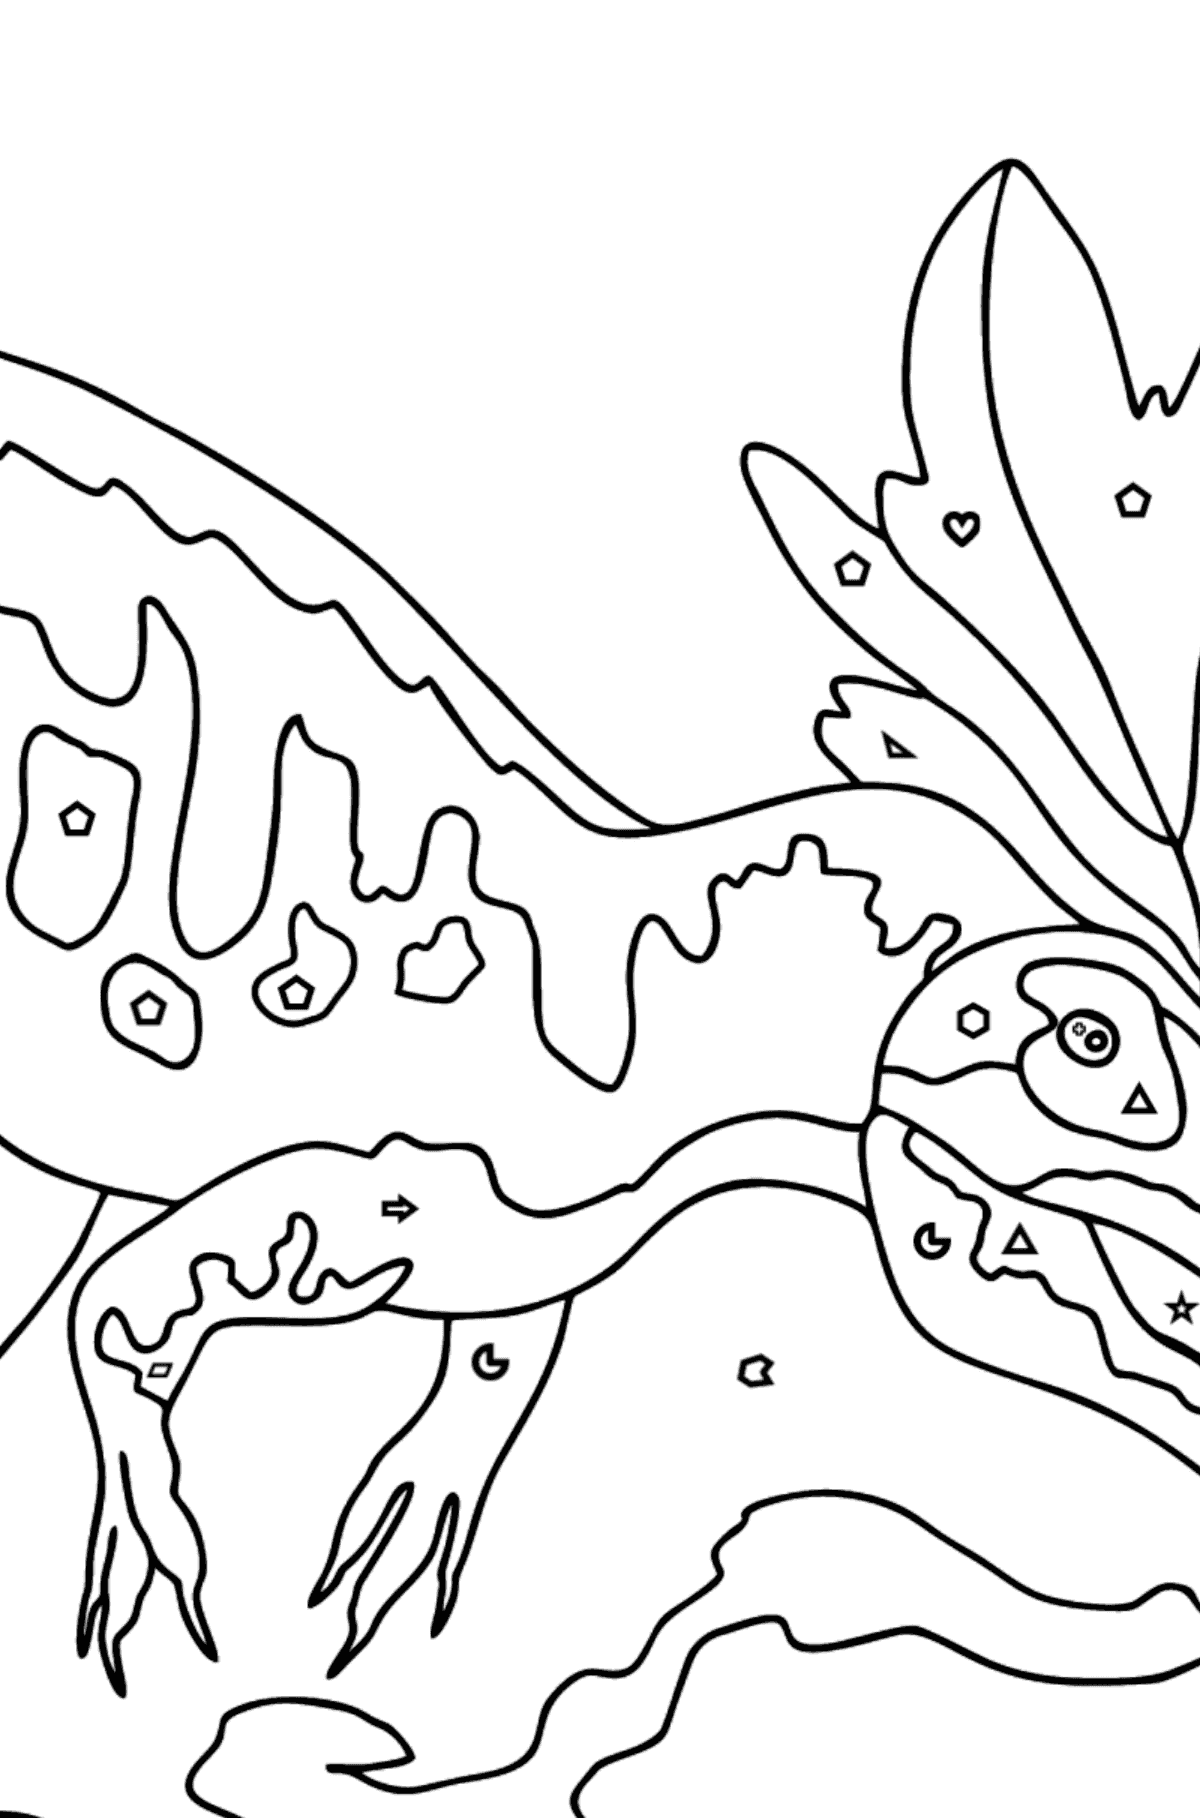 Dibujo para colorear de alosaurio (difícil) - Colorear por Formas Geométricas para Niños